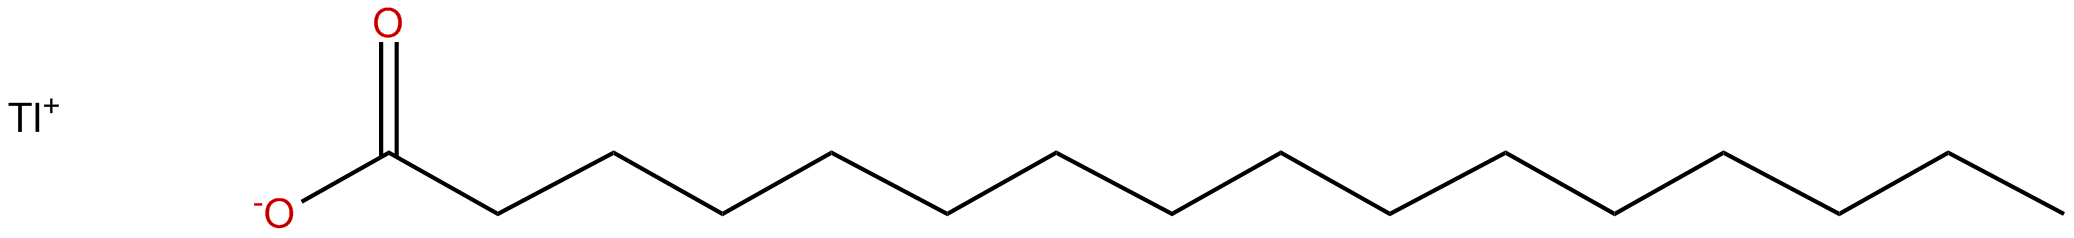 Image of thallium(I) hexadecanoate